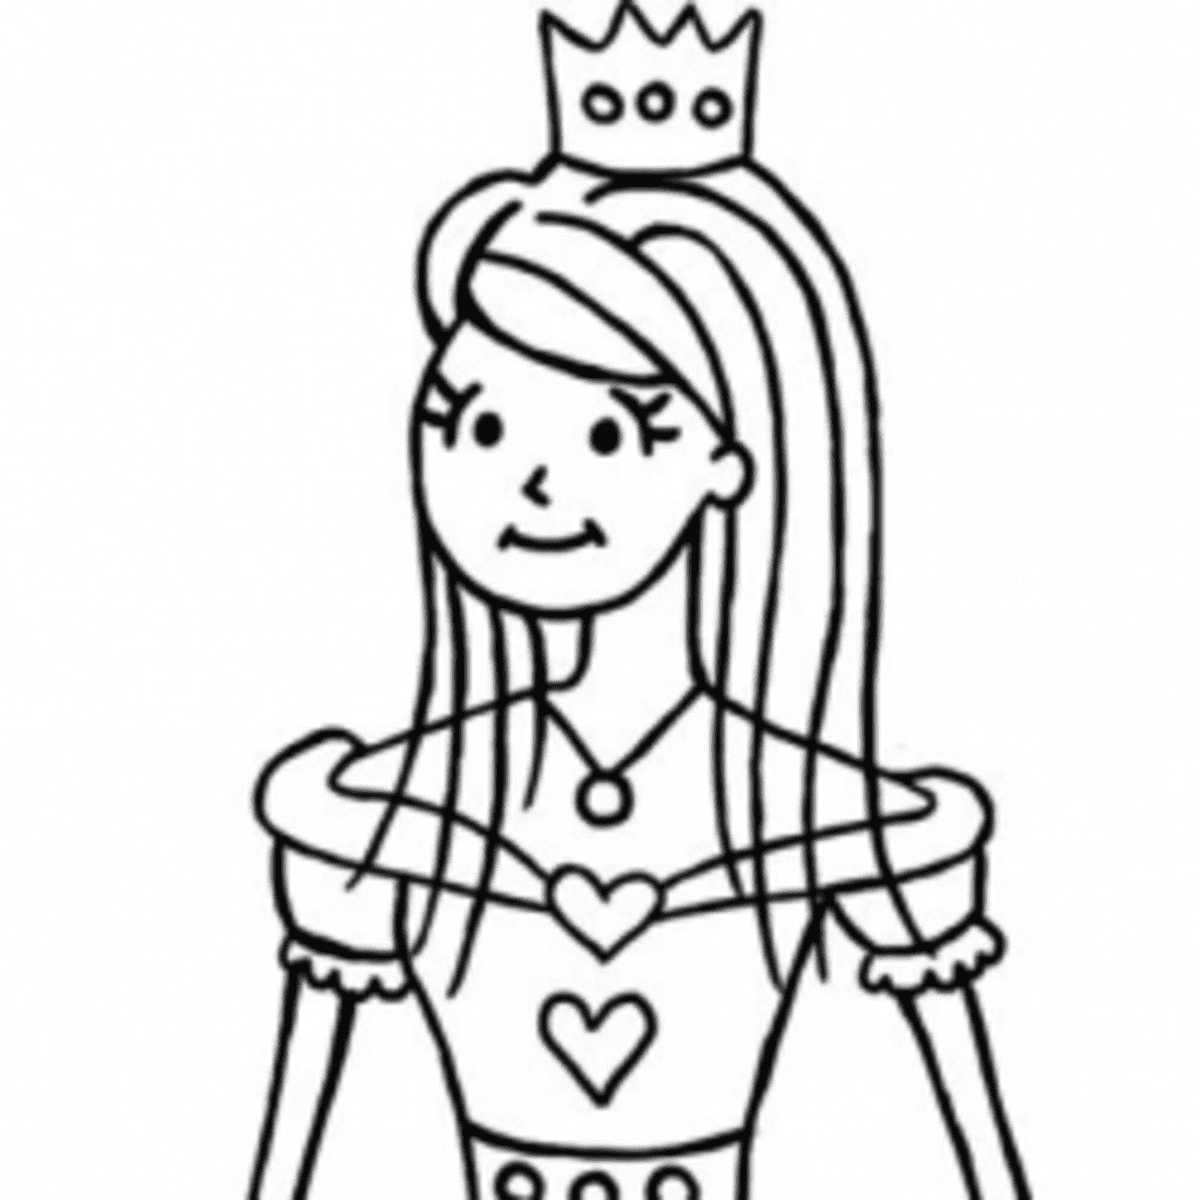 How to draw a princess step